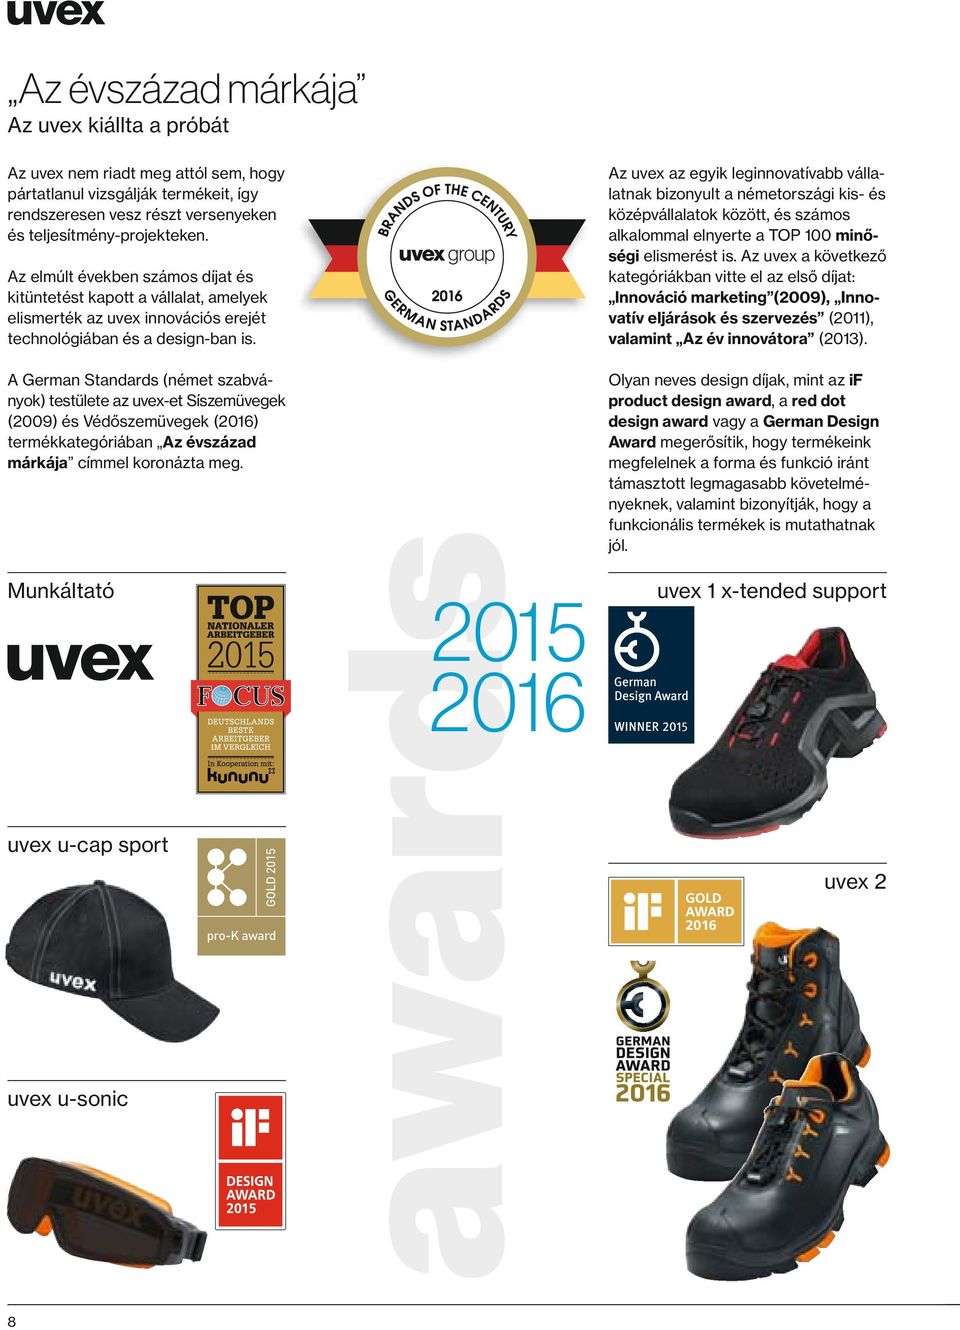 A German Standards (német szabványok) testülete az uvex-et Síszemüvegek (2009) és Védőszemüvegek (2016) termékkategóriában Az évszázad márkája címmel koronázta meg.